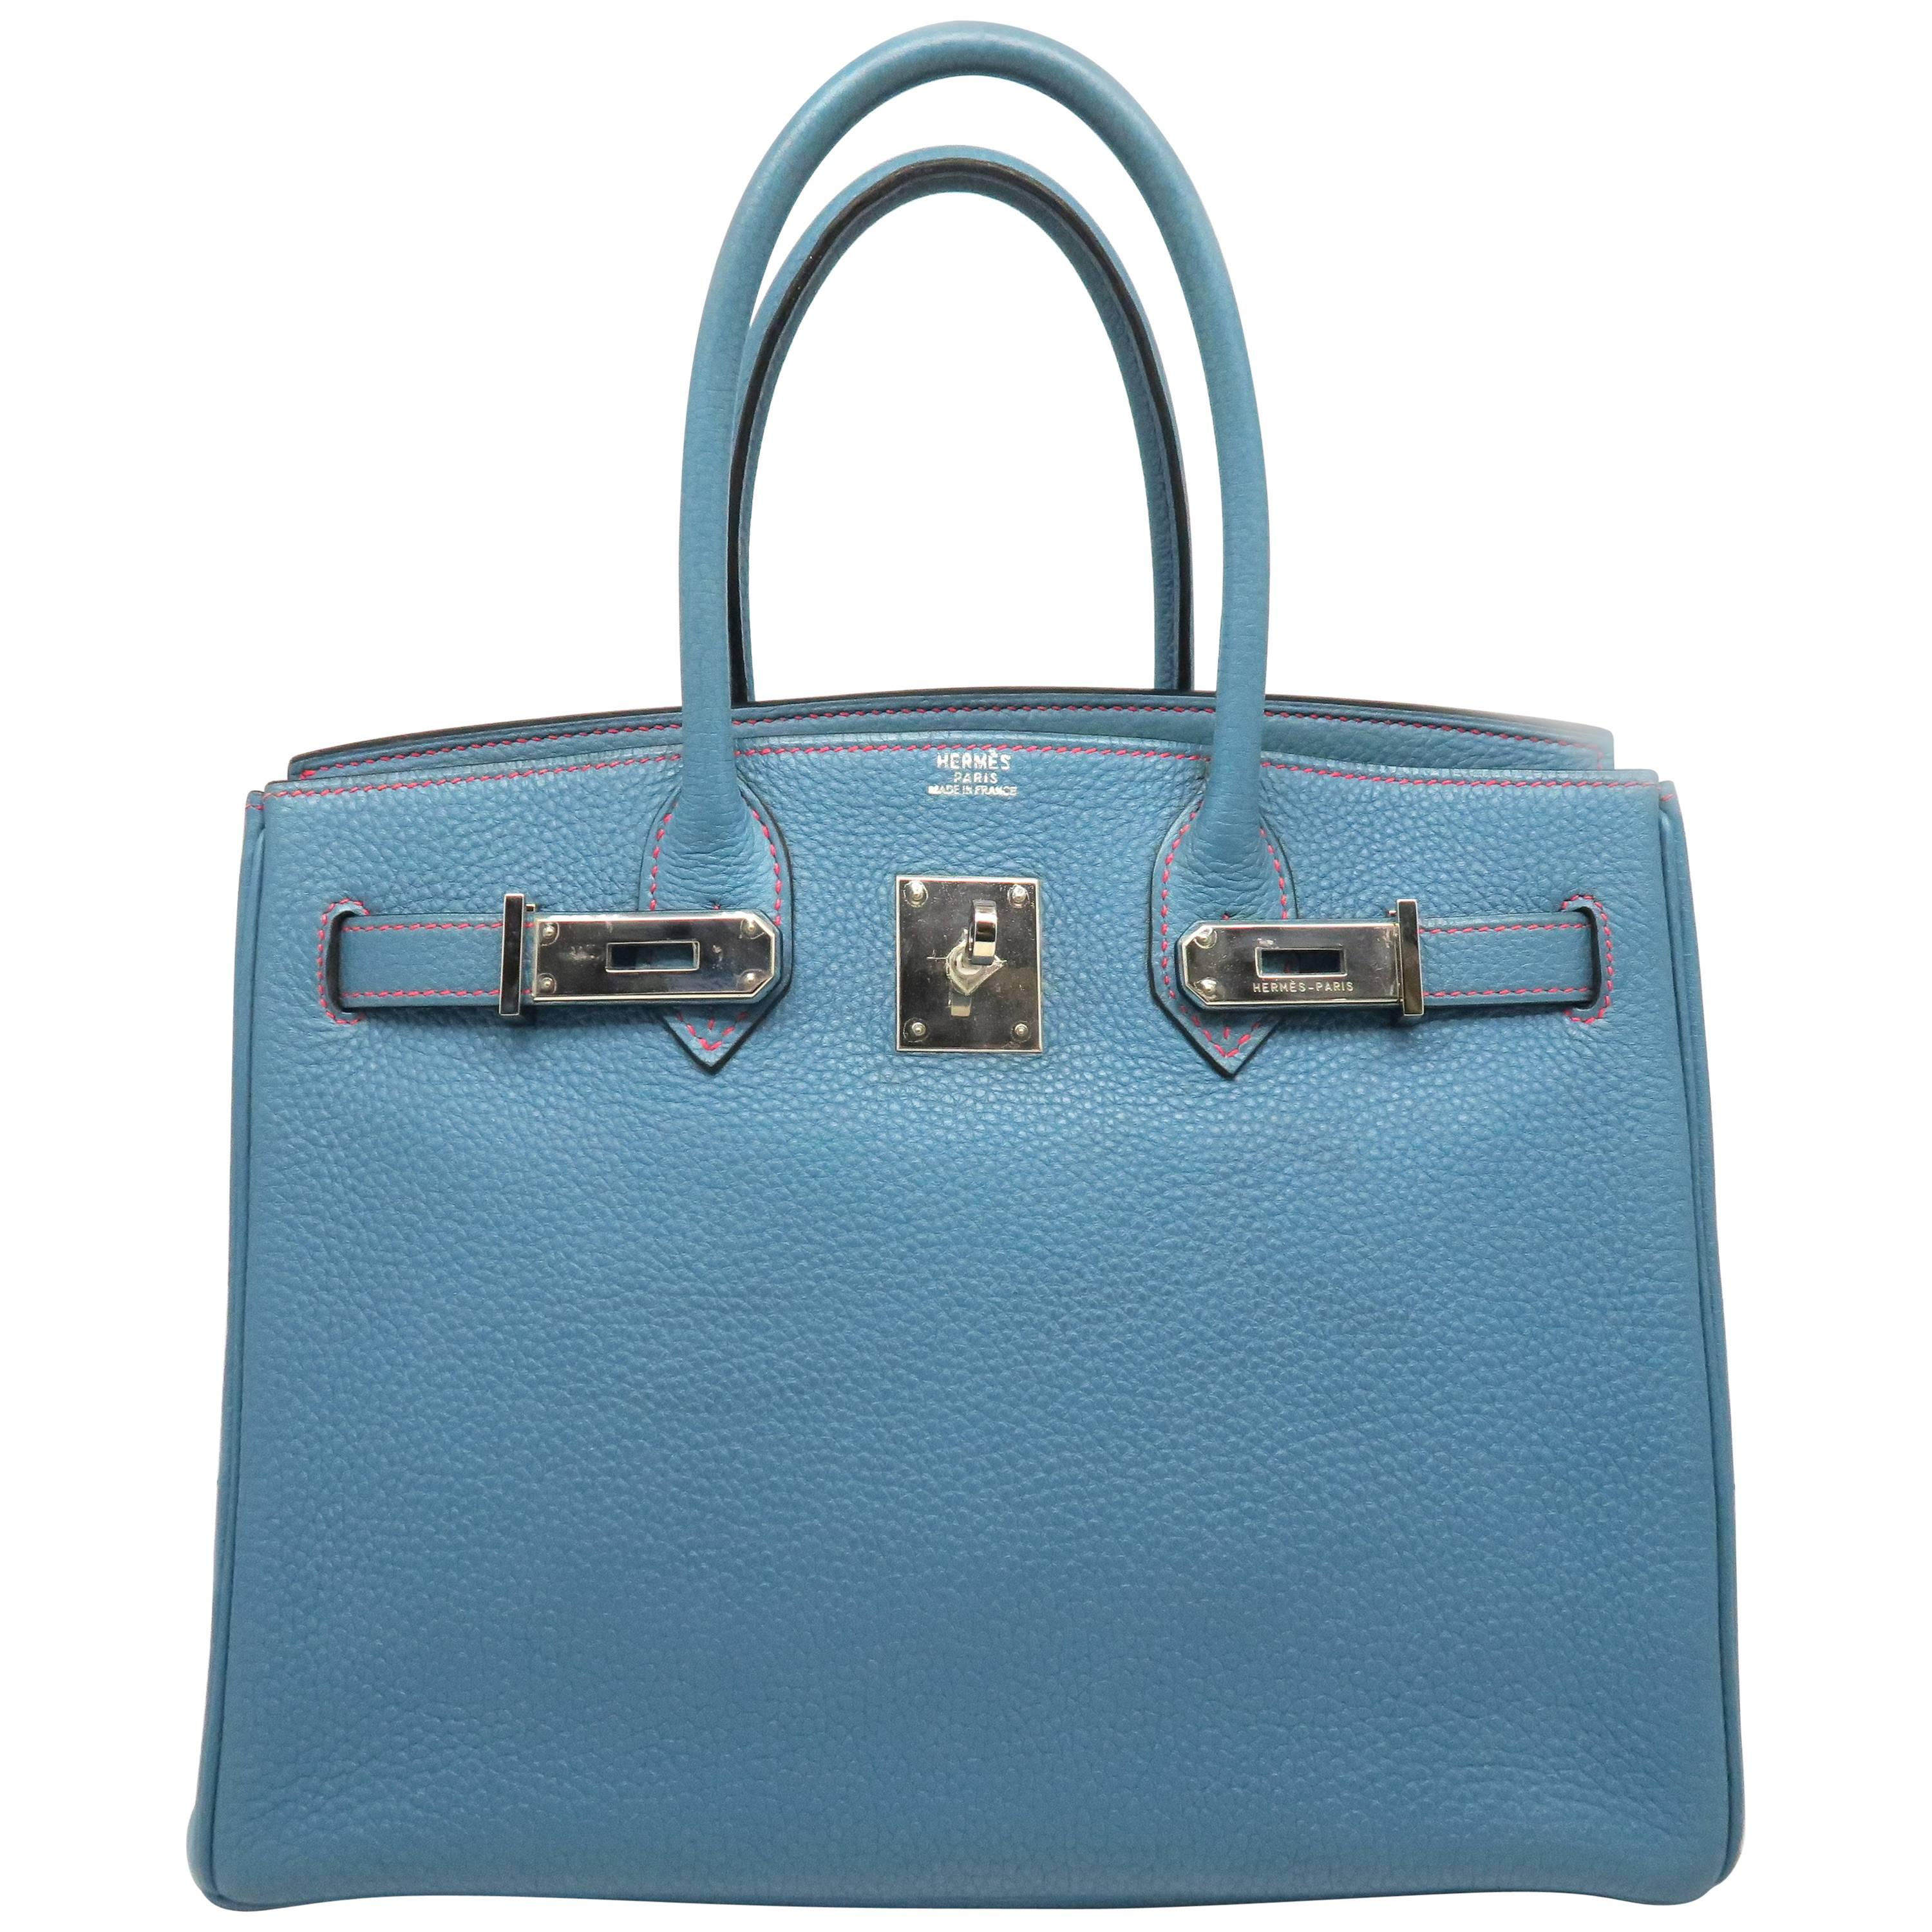 Hermes Birkin 30 Bleu Jean Blue Togo Leather SHW Top Handle Bag